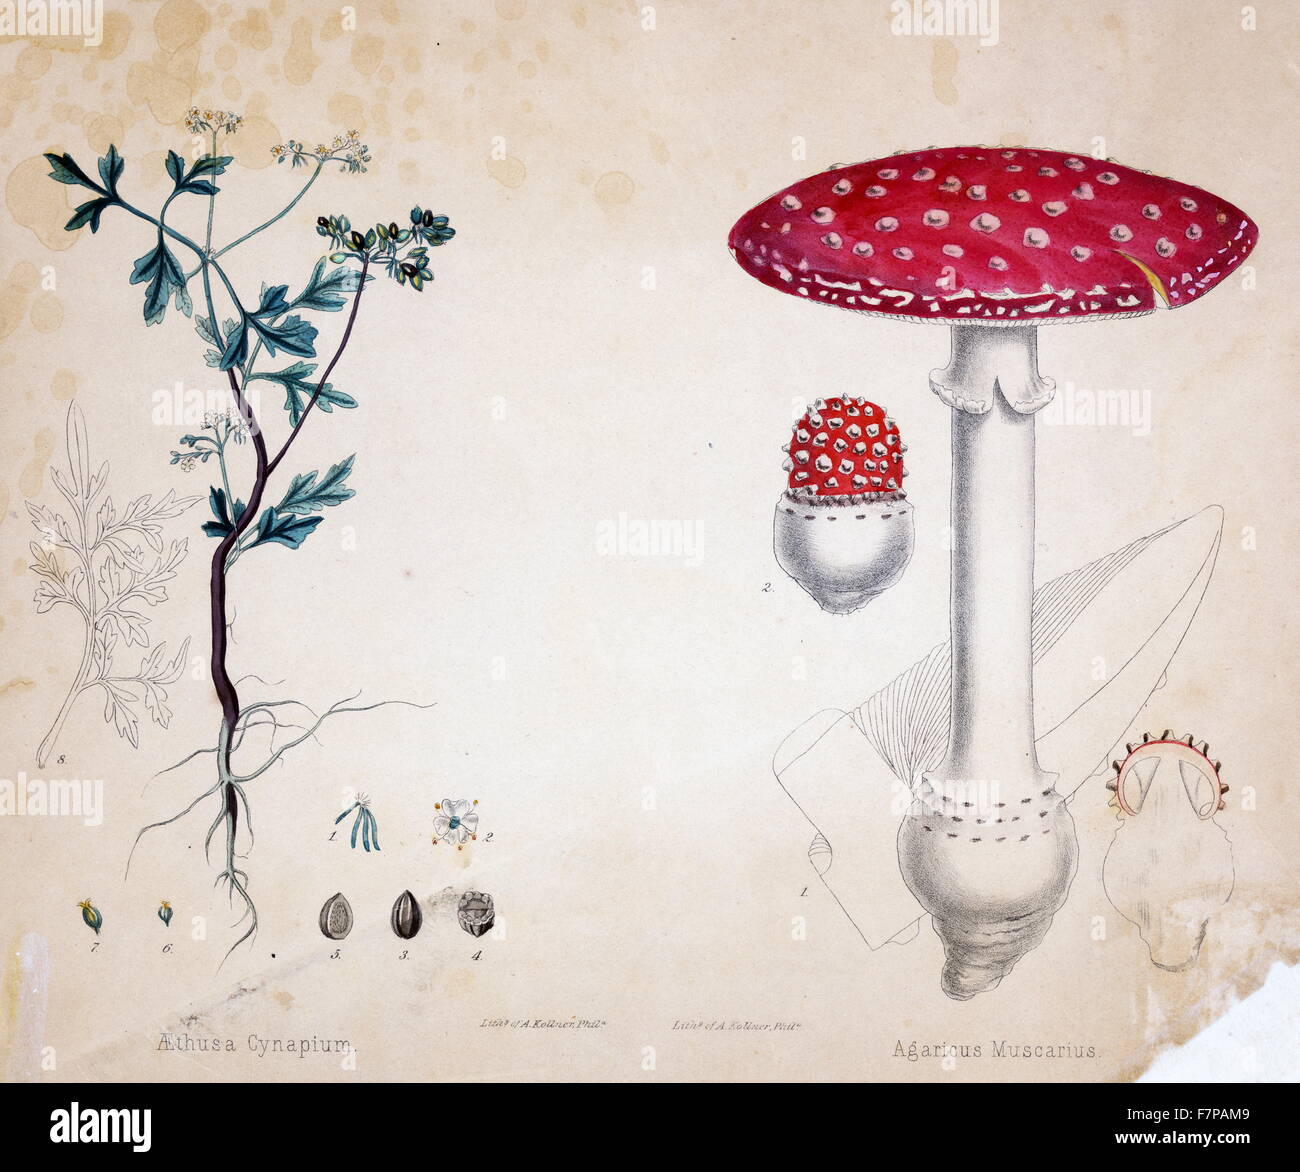 Imprimez un exemplaire de l'illustration pour la botanique Aethusa Cynapium, une plante et un champignon Agaricus Mascarius, par Auguste Kollner (1813-1906), lithographie de couleur à la main. Banque D'Images